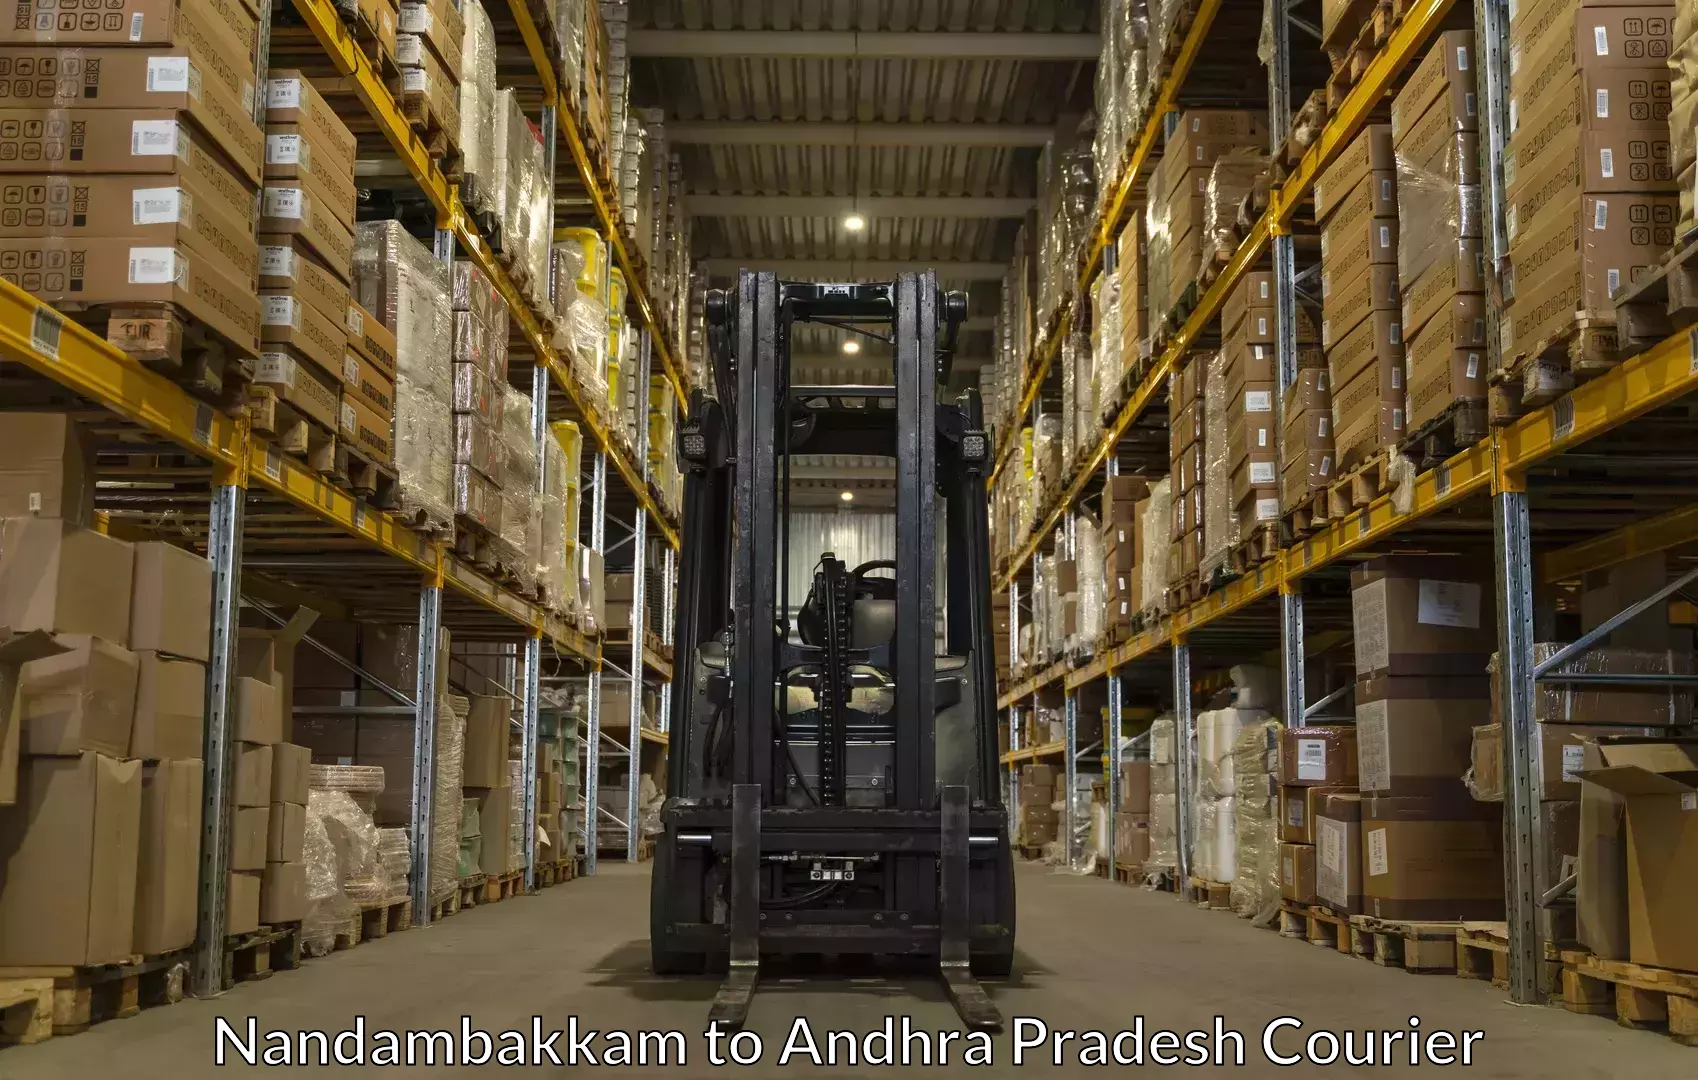 Luggage delivery network Nandambakkam to Amalapuram